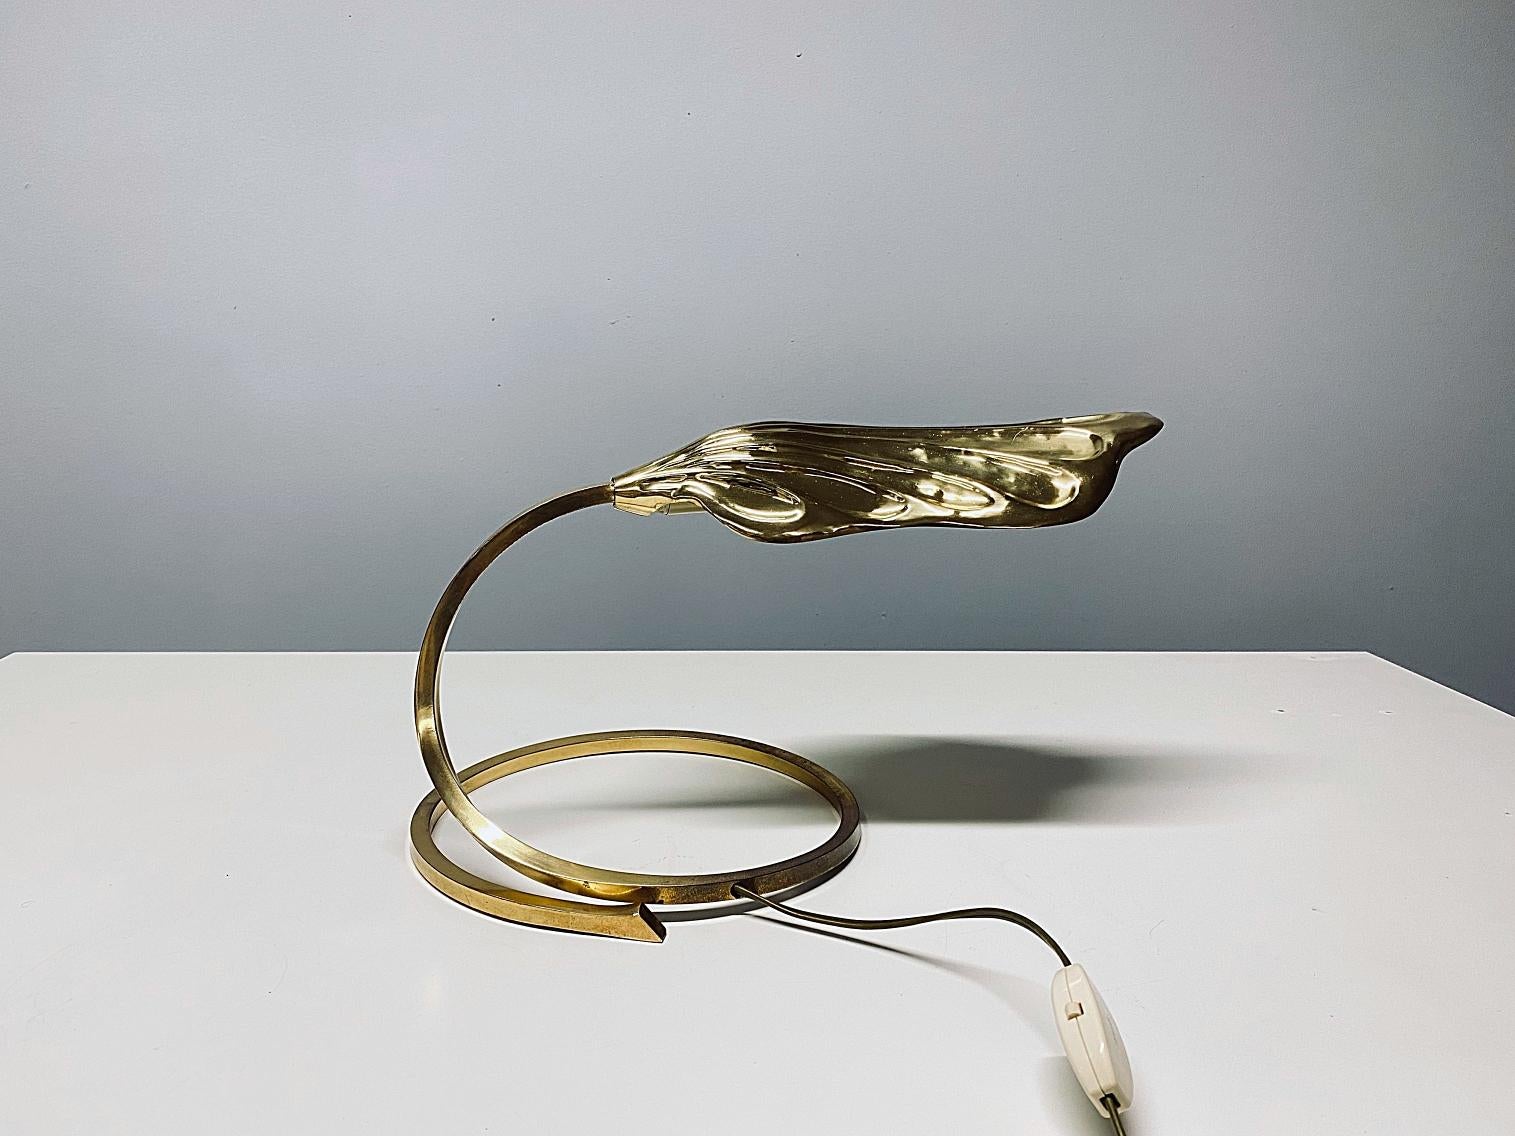 Wunderschöne Tischlampe, entworfen von Tommaso Barbi für Bottega Gadda, hergestellt in den 1970er Jahren, Italien. Die Lampe ist aus poliertem Messing gefertigt. Die Lampe spendet ein sanftes und wunderbares Licht. Die Lampe ist in einem sehr guten